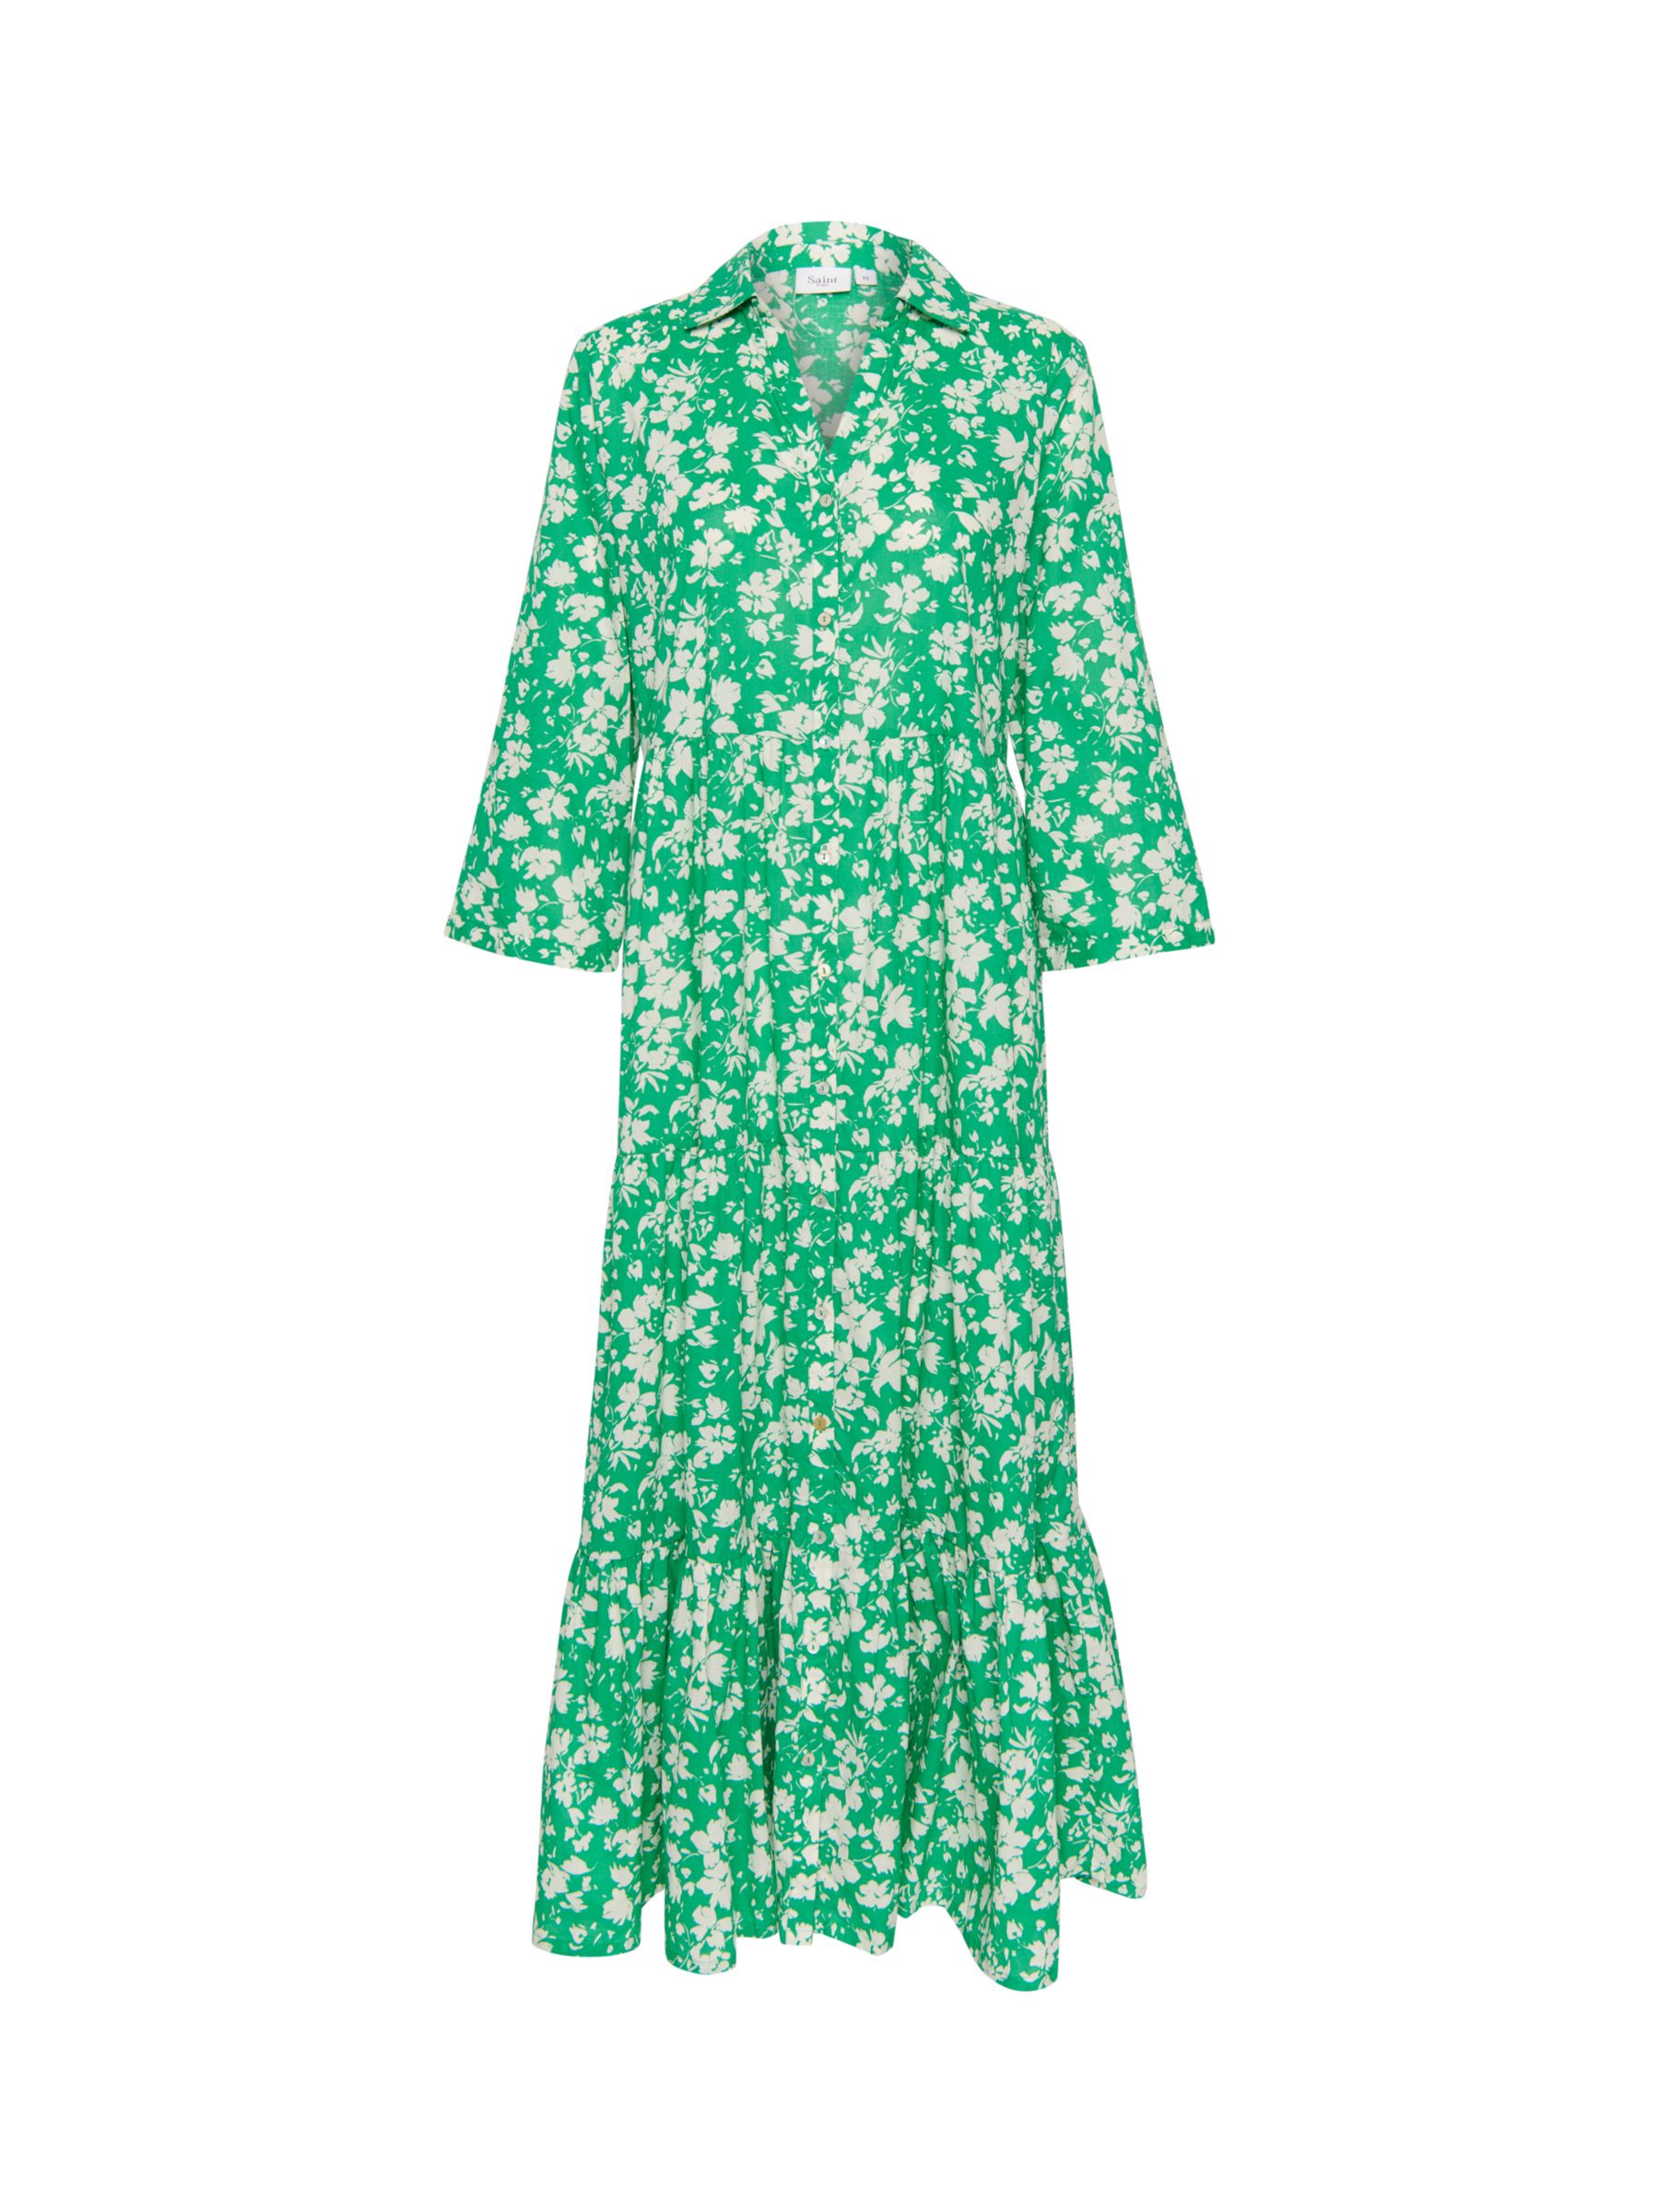 Saint Tropez Zus Long Sleeve Shirt Maxi Dress, Bright Green, S